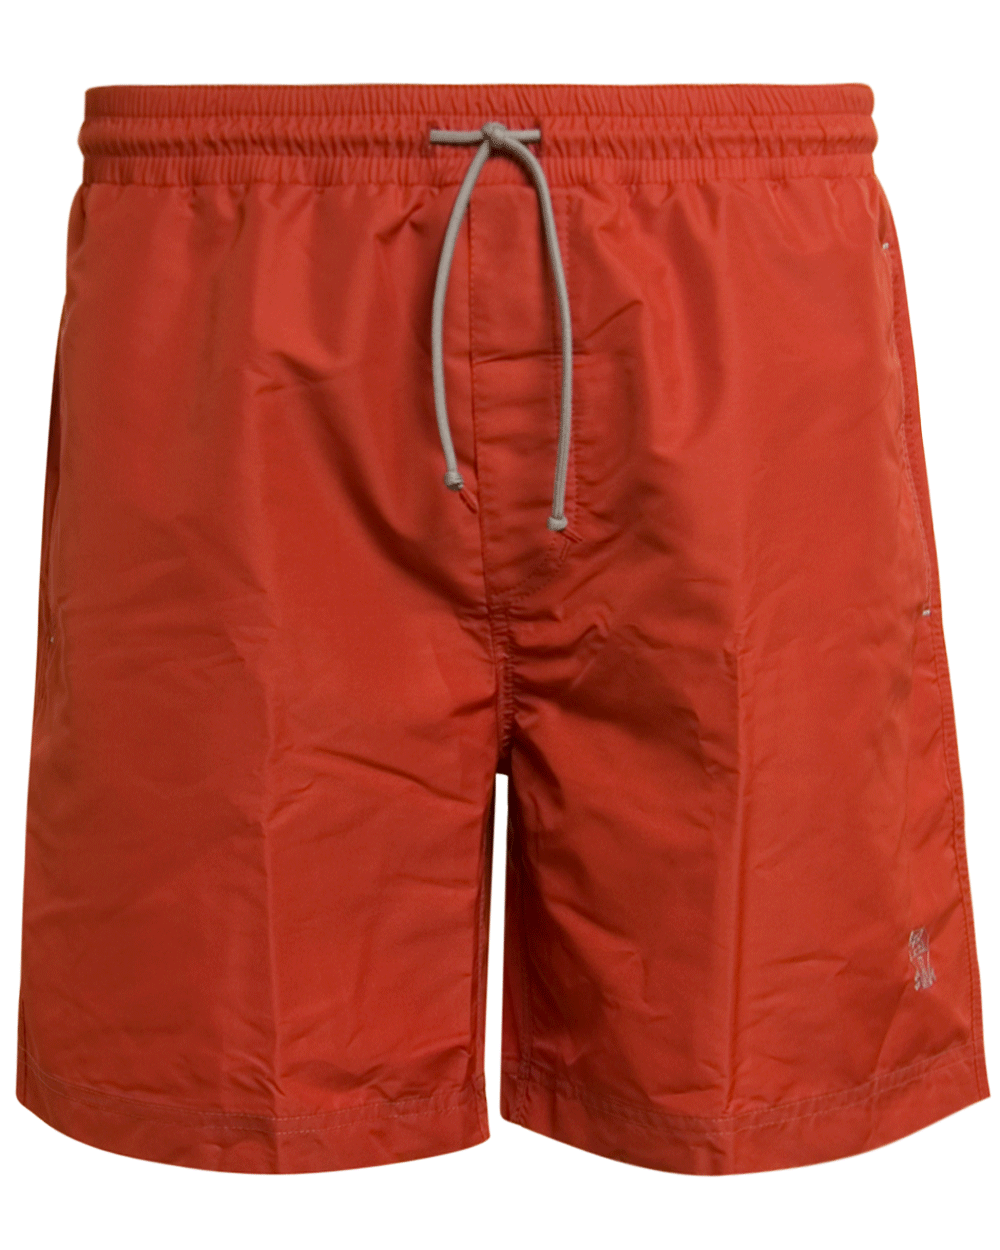 Solid Orange Swim Short